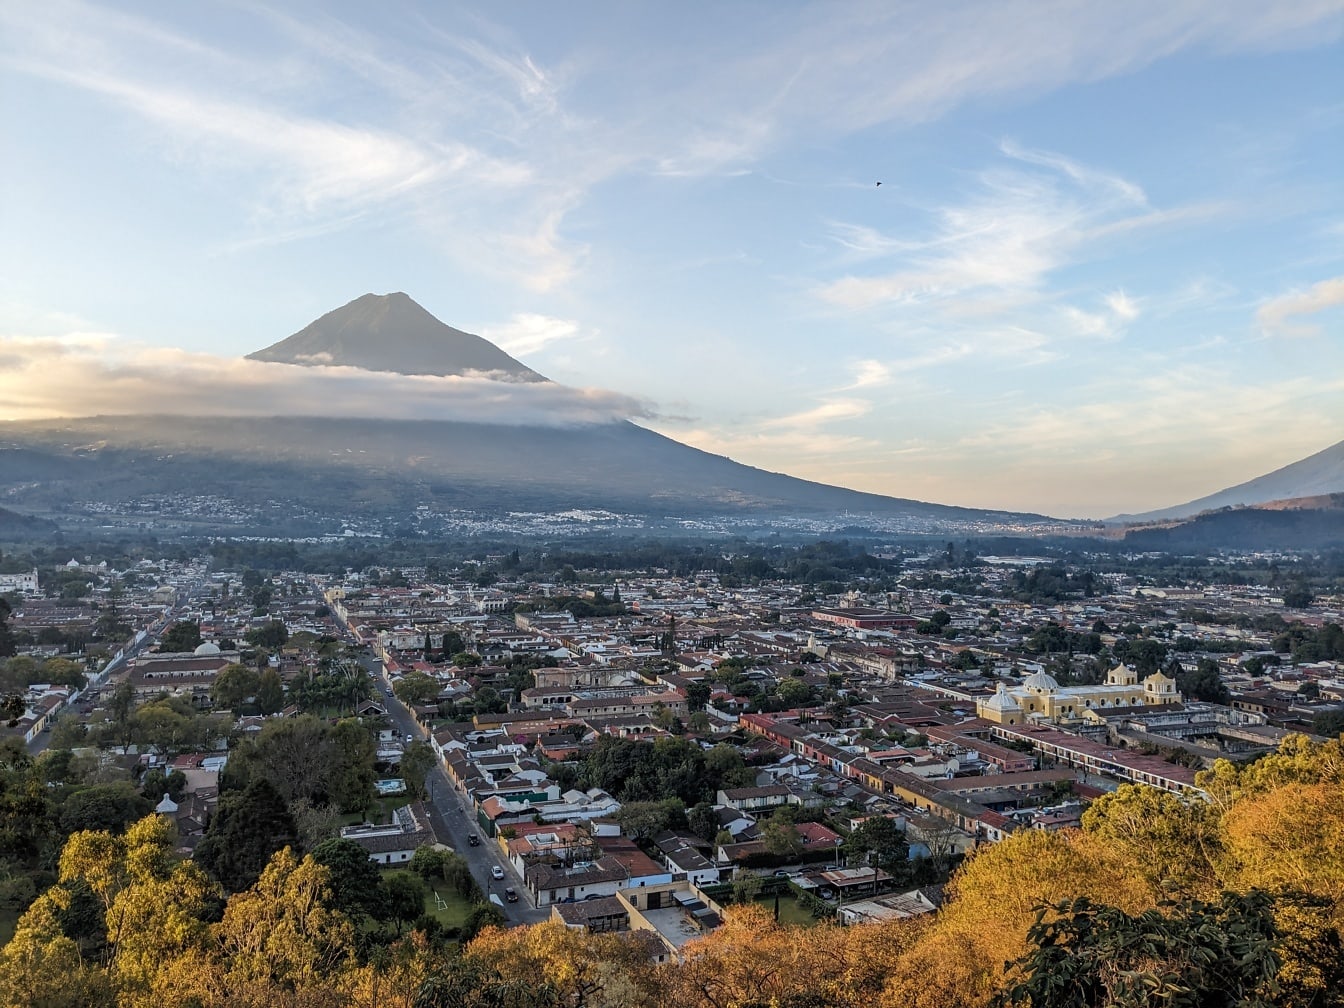 Місто Гватемала з гірською вершиною над хмарами на задньому плані